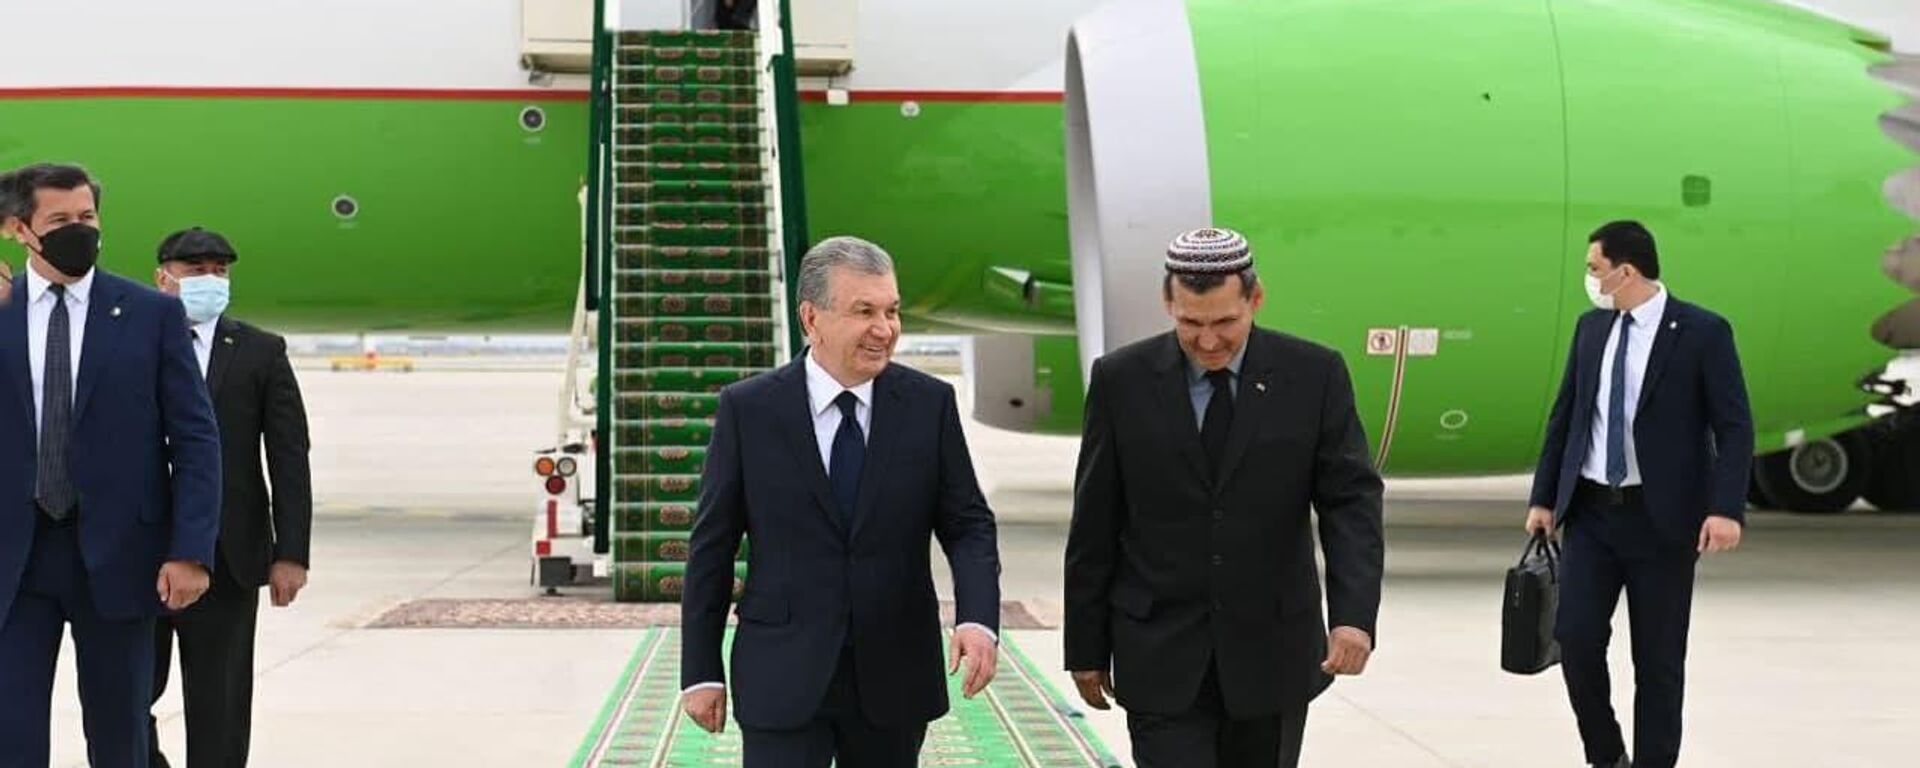 Мирзиёев прибыл в Туркменистан с рабочим визитом 29 апреля 2021 года - Sputnik Узбекистан, 1920, 29.04.2021